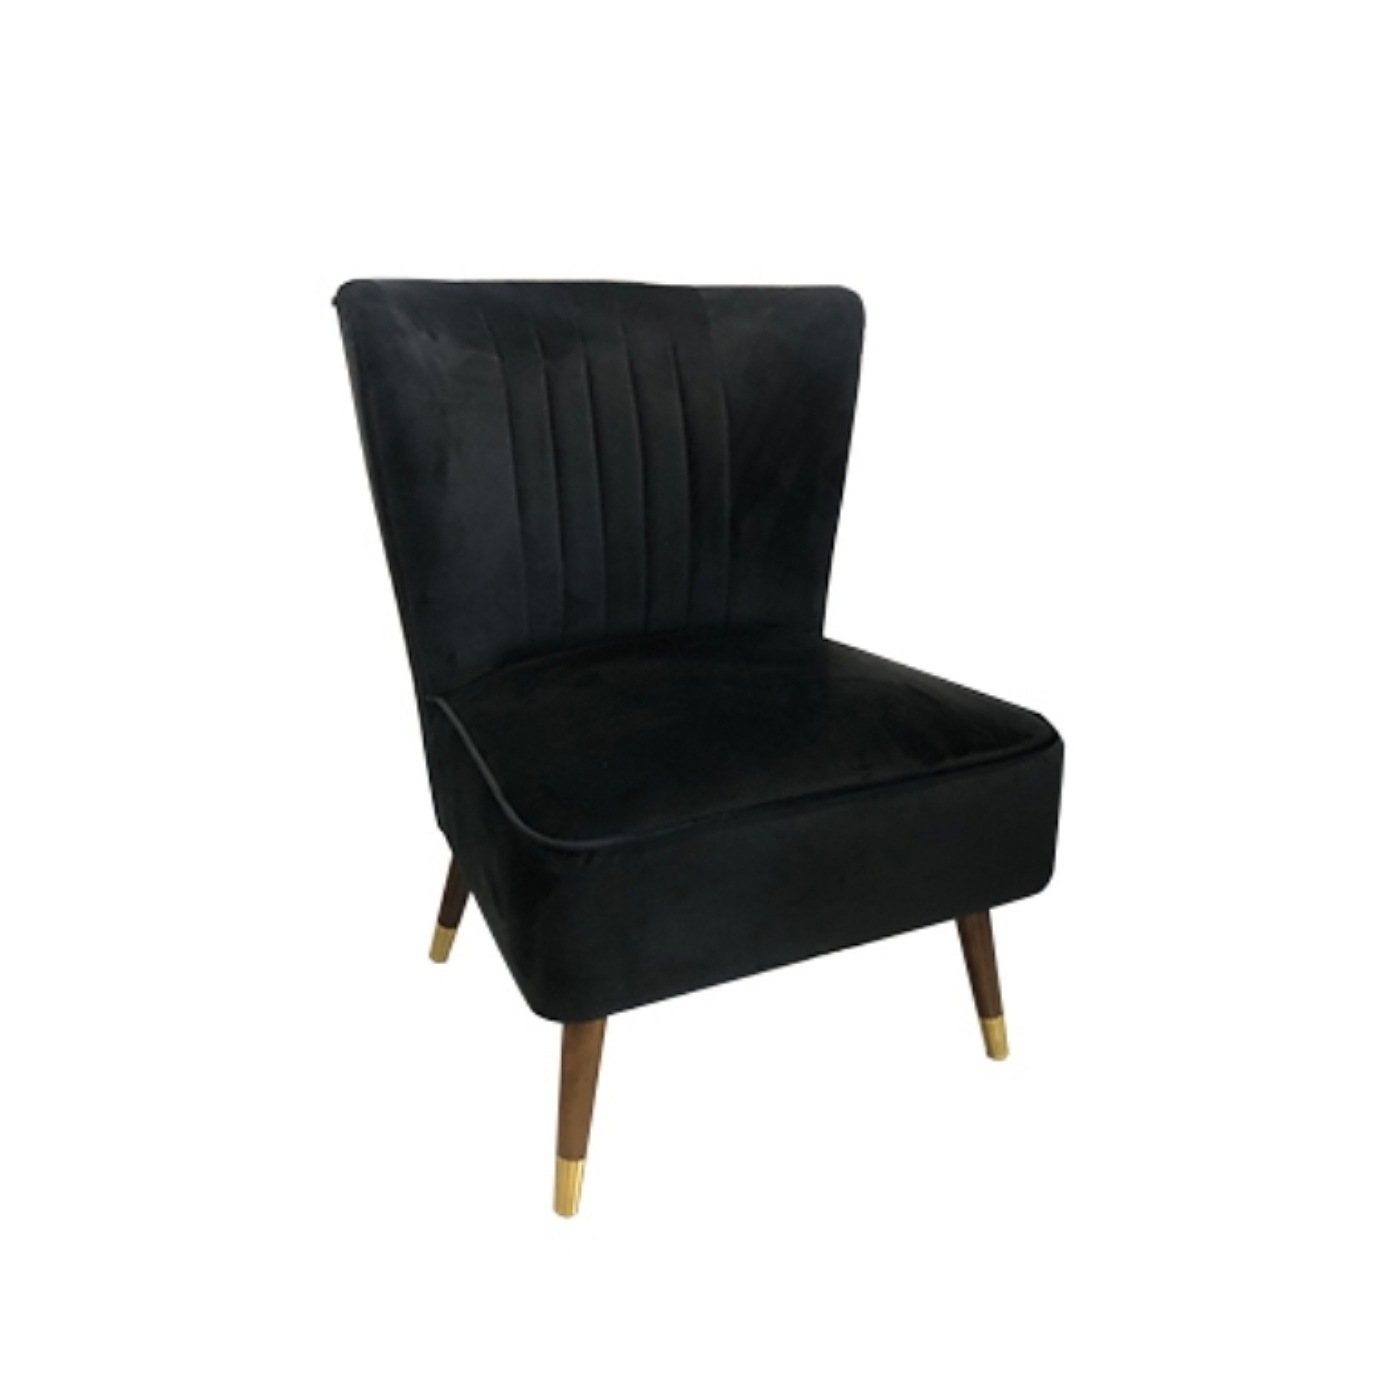 Black Velvet Shell Chair.